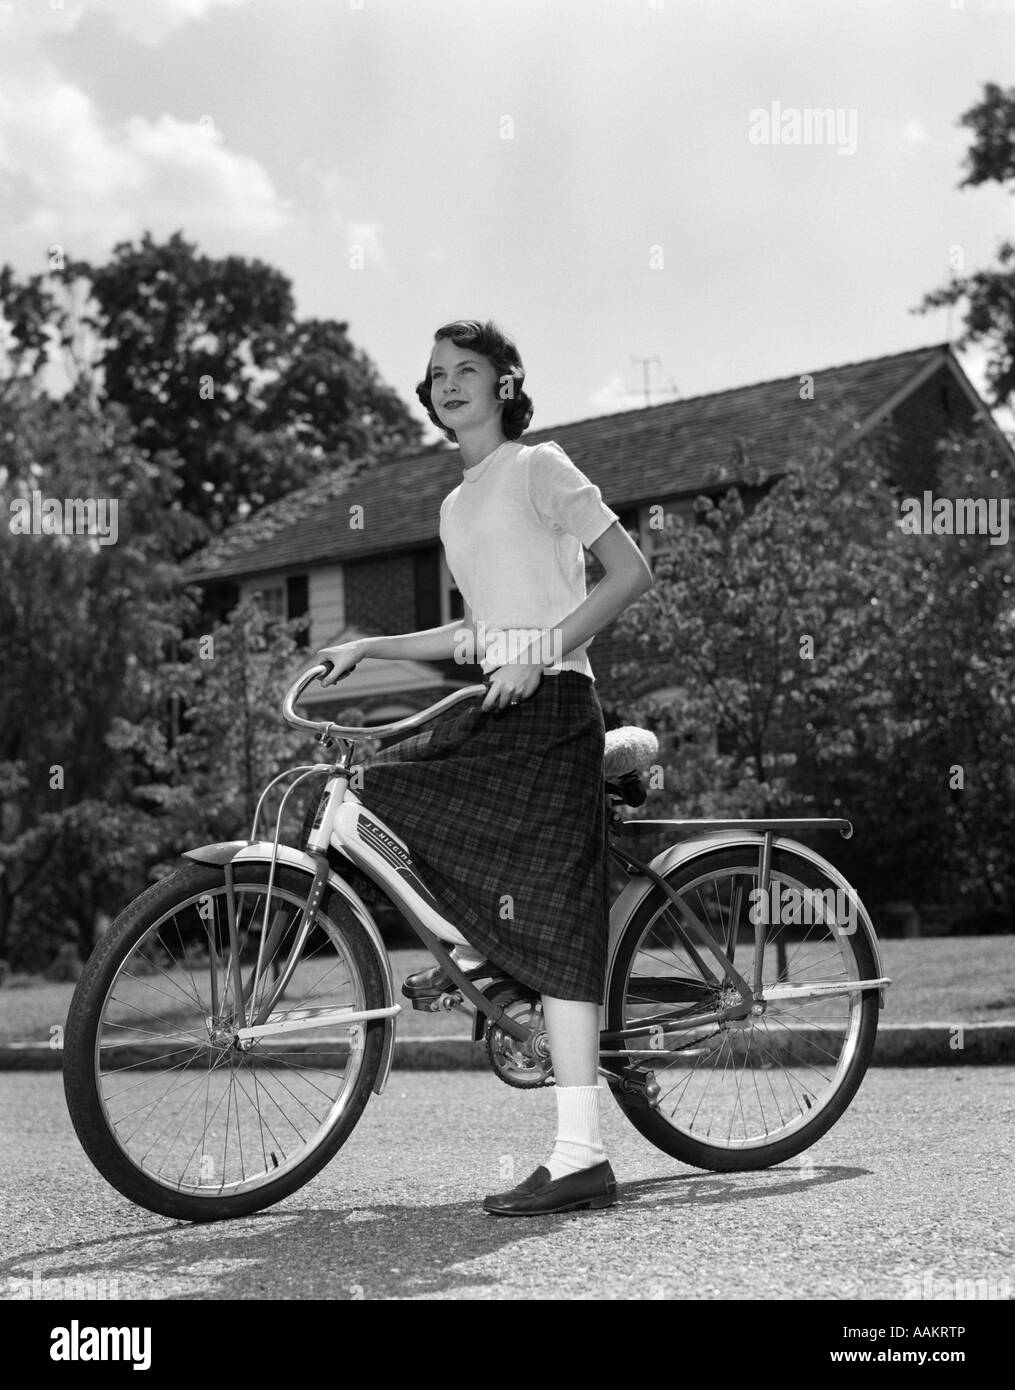 bicicletta anni 60 casolini